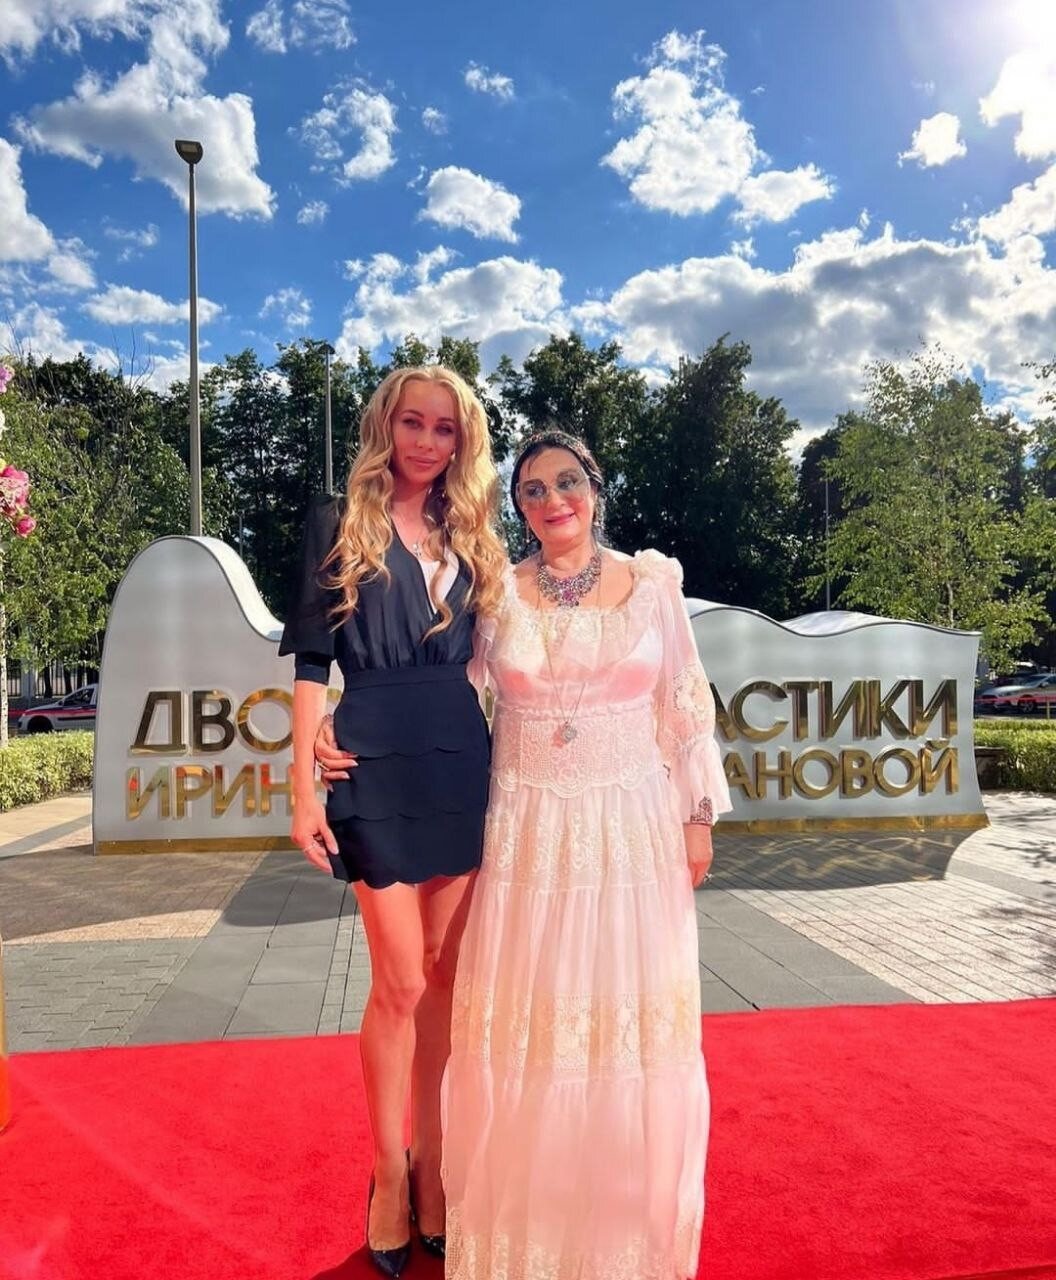 Спустя месяц после развода, 74-летняя Ирина Винер вновь надела свадебное платье